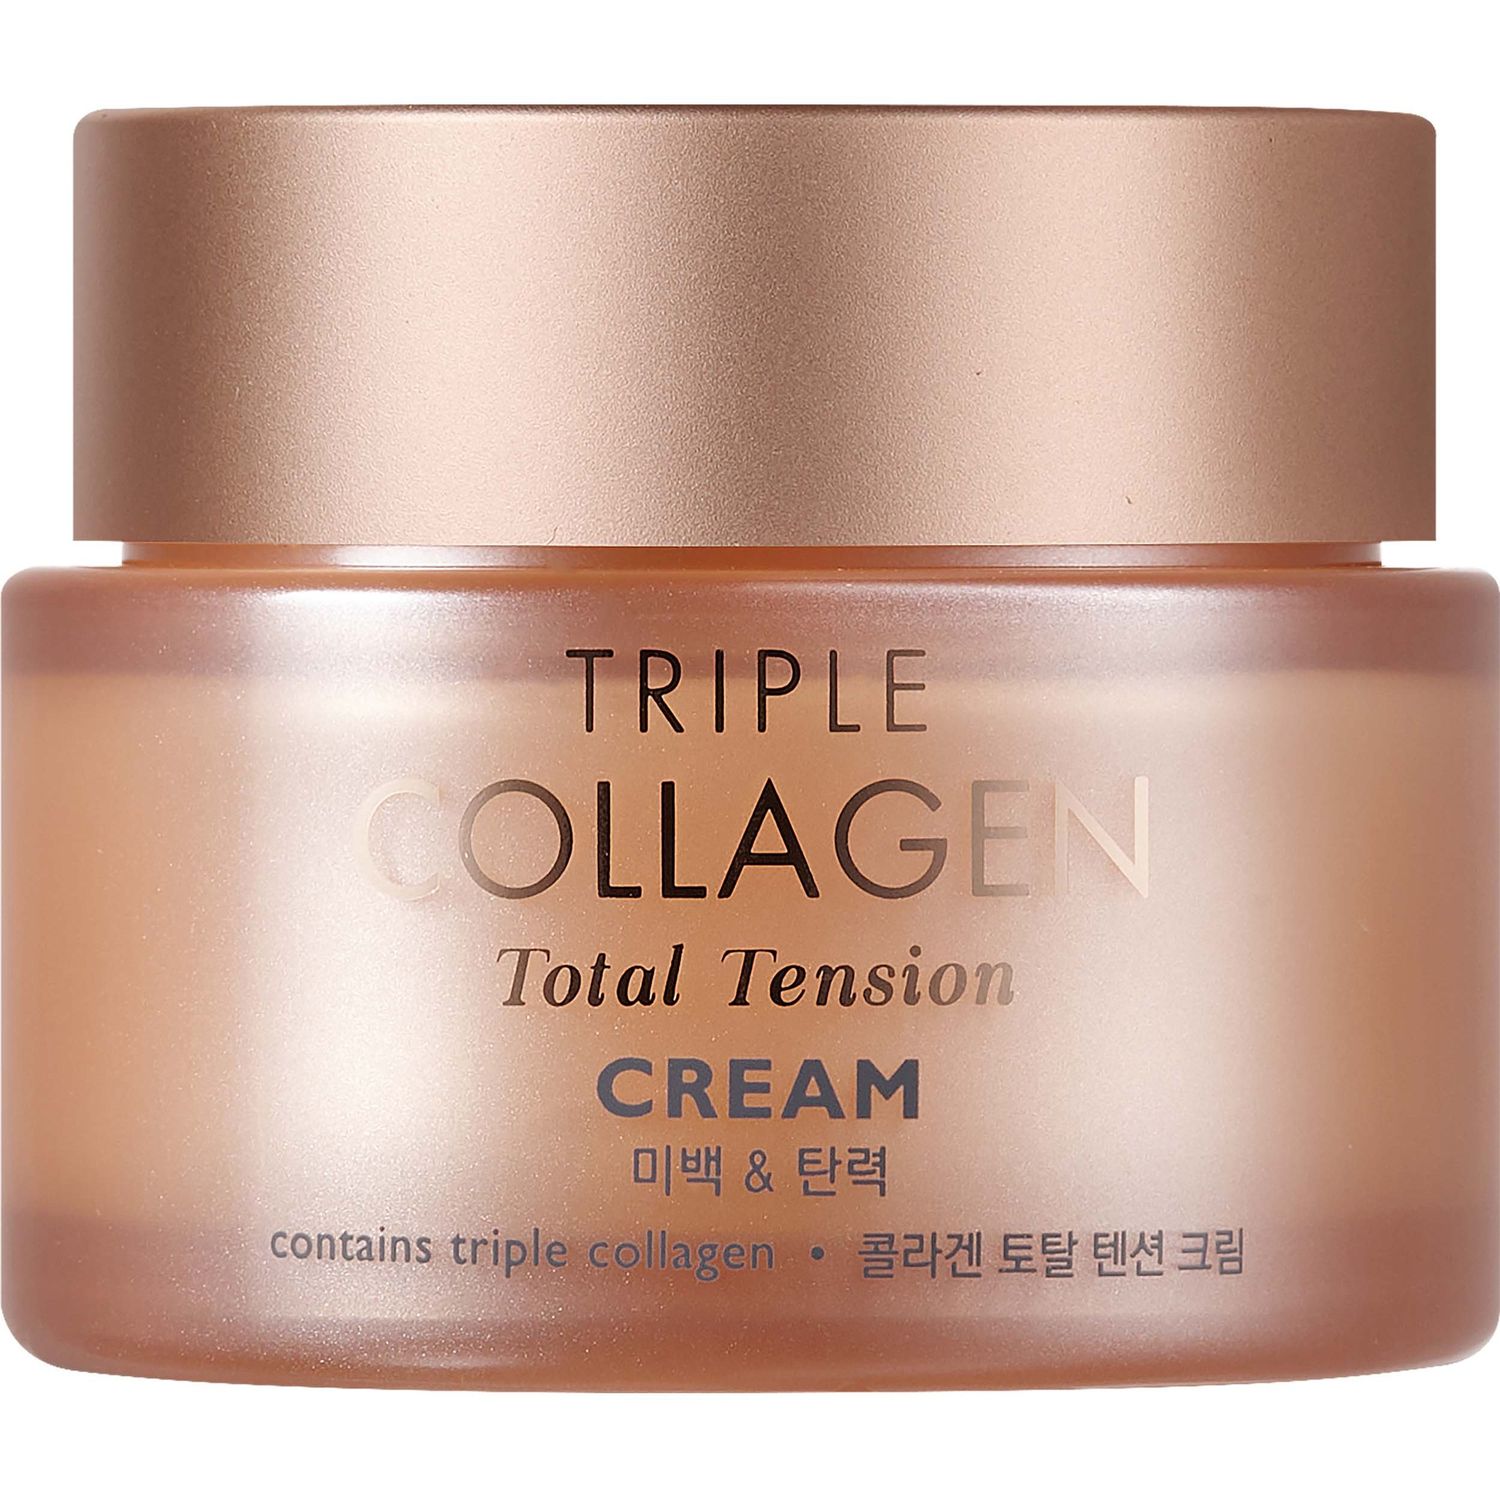 Крем для лица Tony Moly Triple Collagen Total Tension Cream, питательный с коллагеном, 80 мл - фото 2